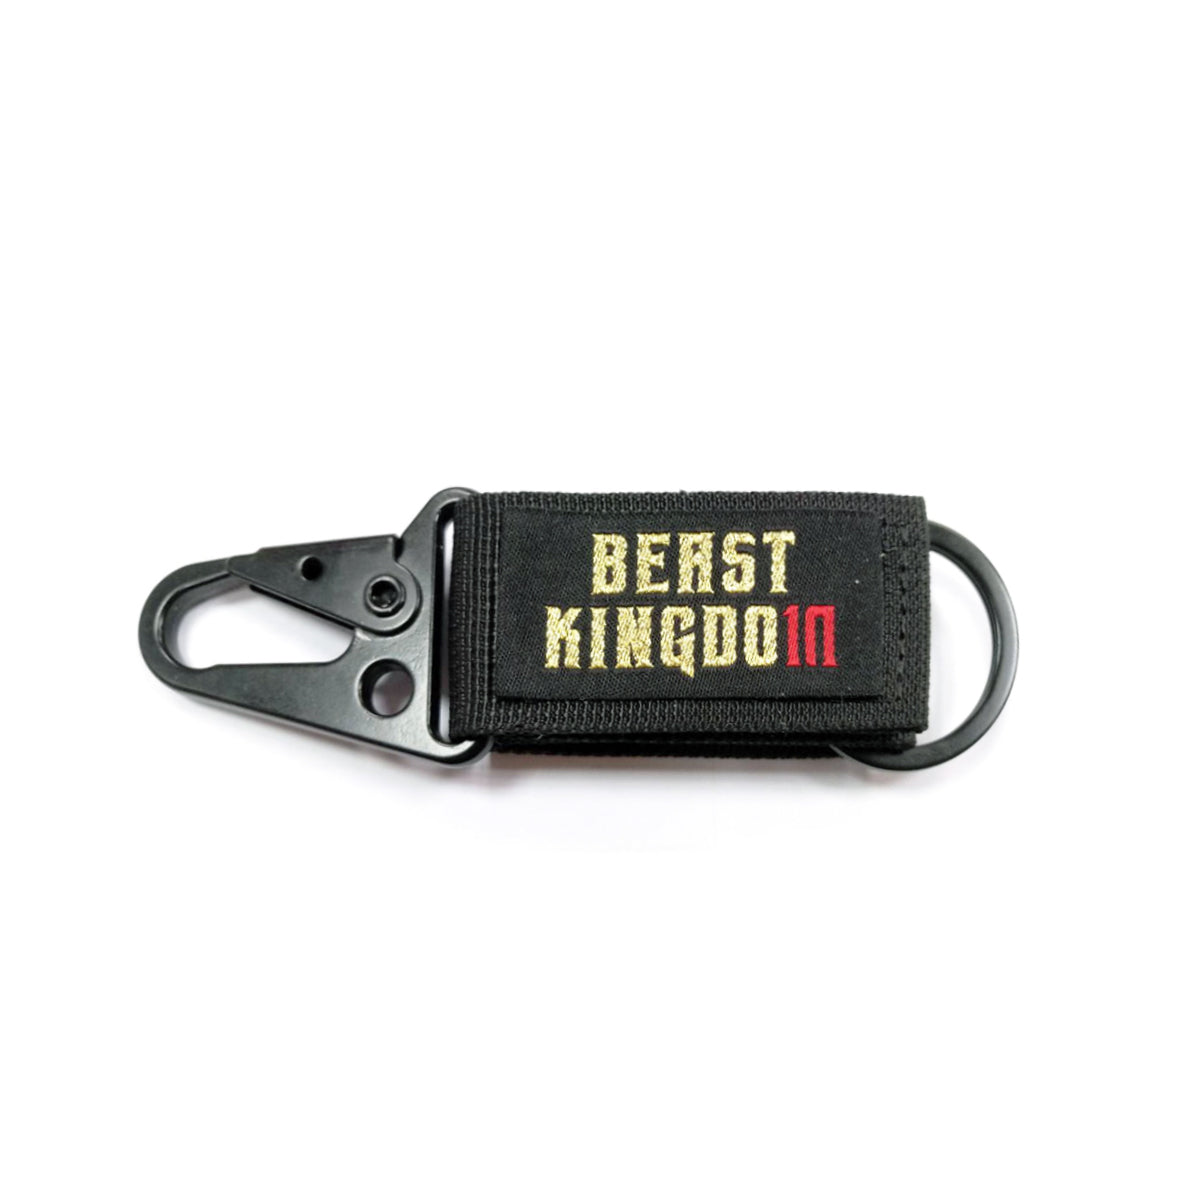 Beast Kingdom Series BK10TH Key Chain - (Black, F)